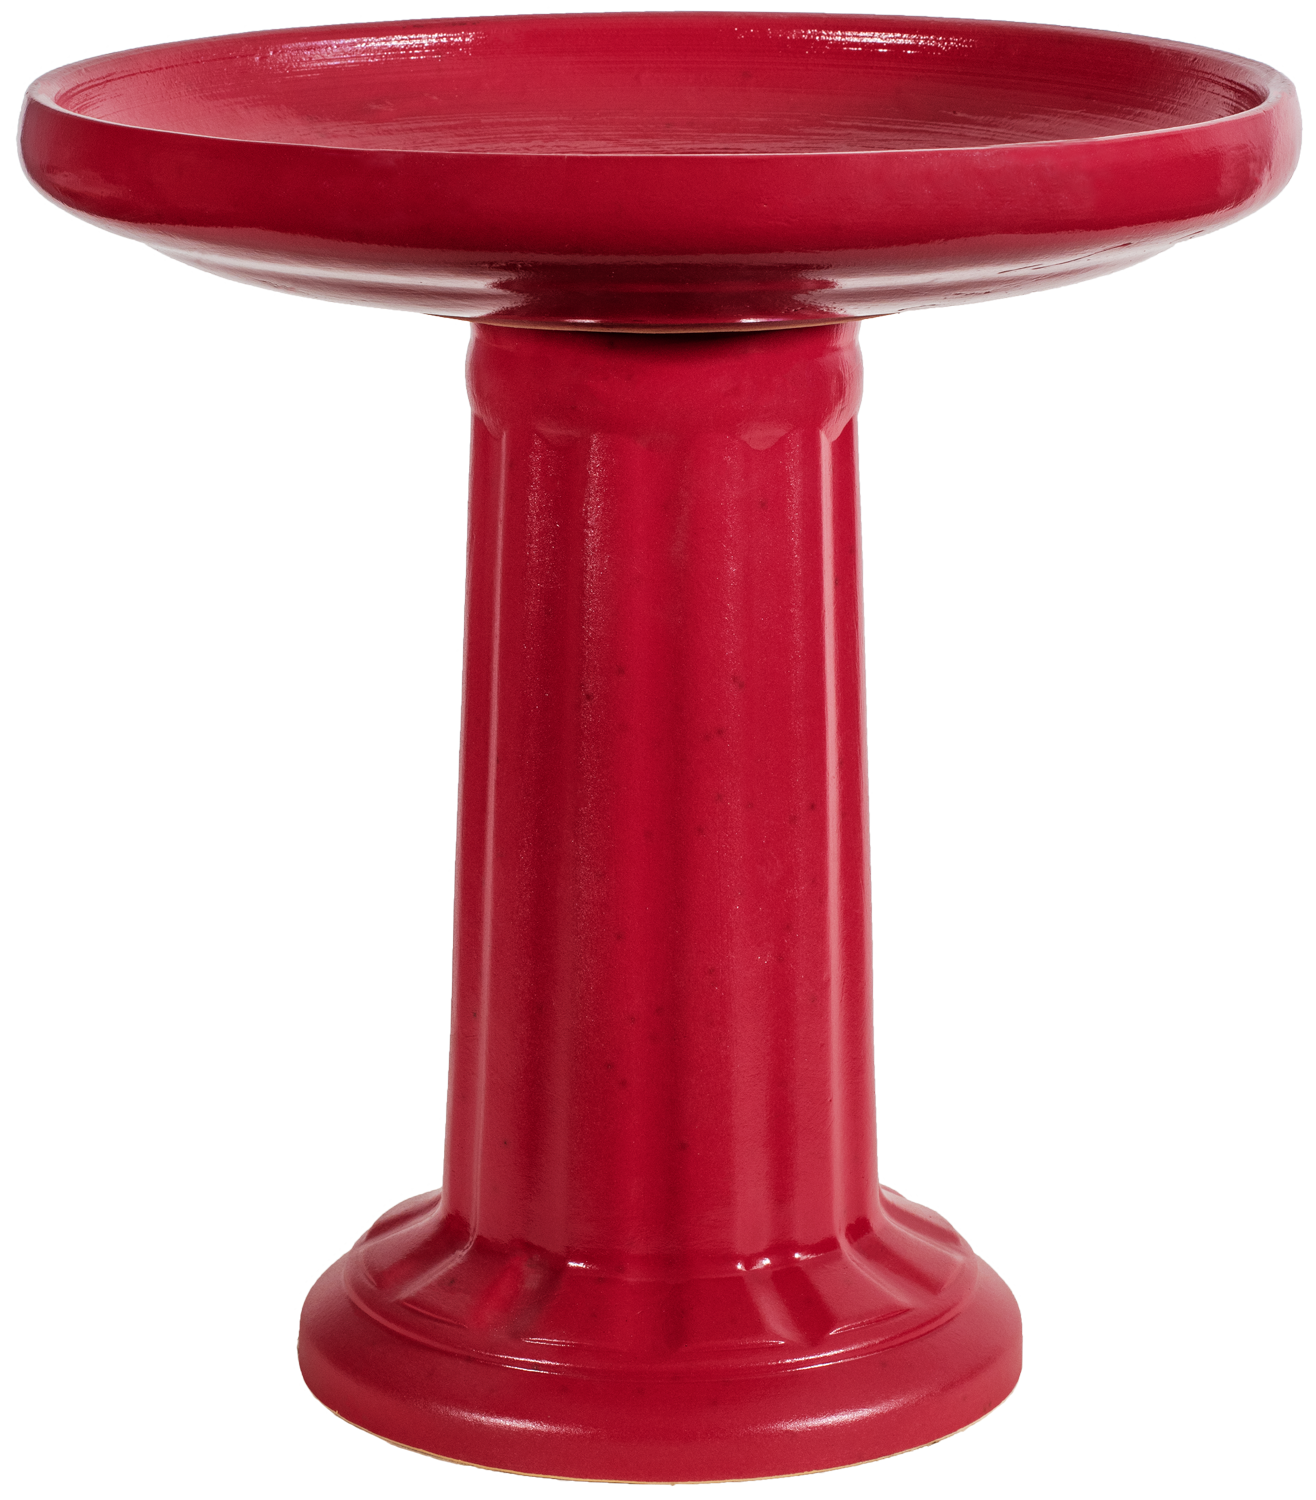 Ceramic red birdbath set with modern clean column design